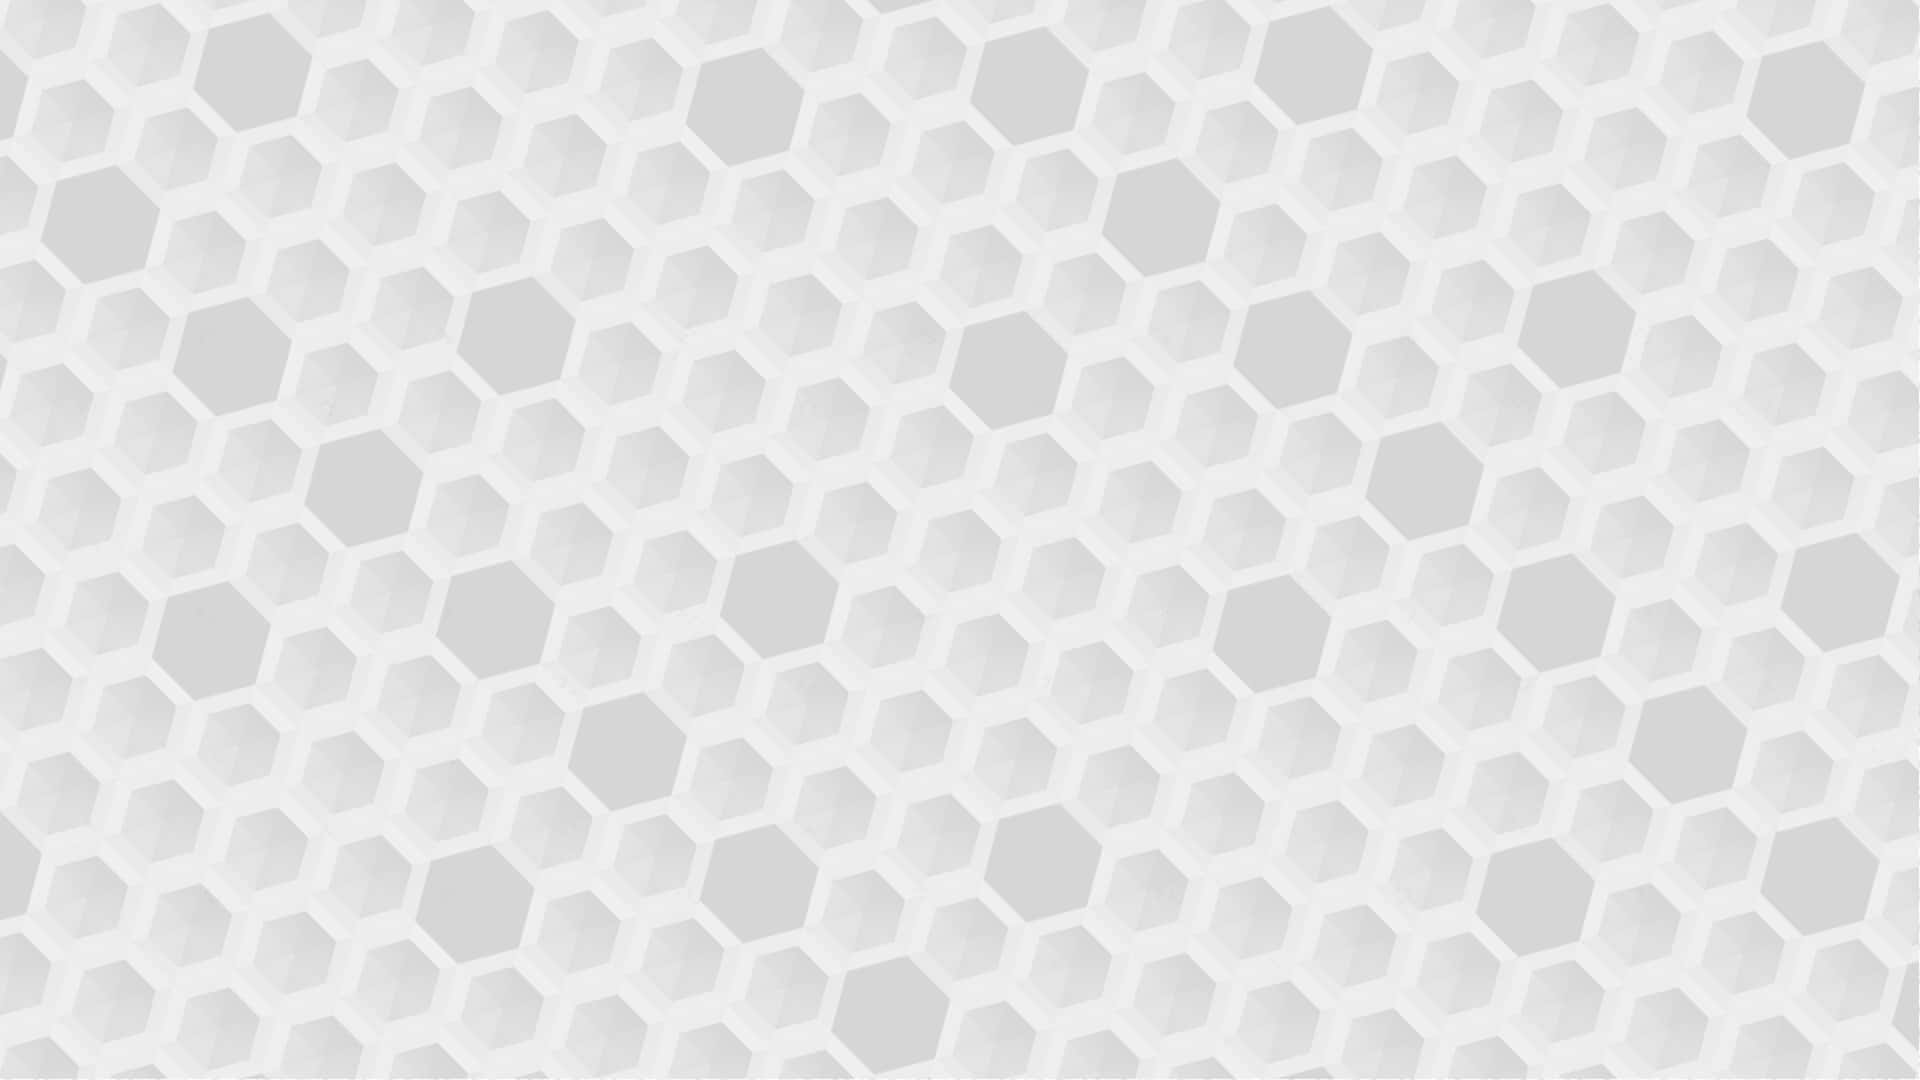 Bilddatorskapad Hexagon 4k Bakgrundsbild. Wallpaper